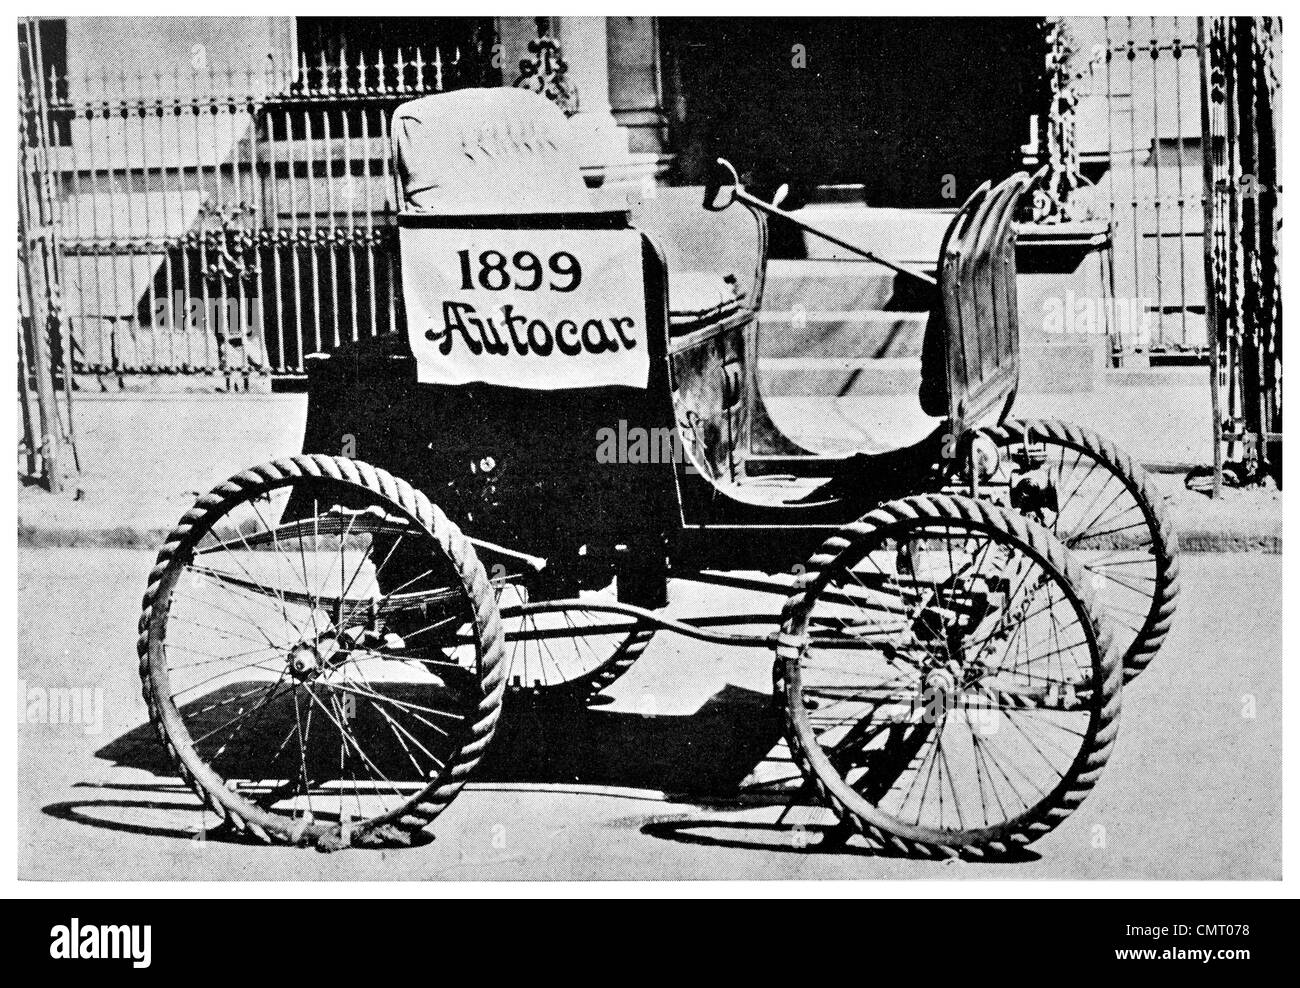 1923 1899 idrocarburo auto carrello pneumatico di corda autocar Foto Stock